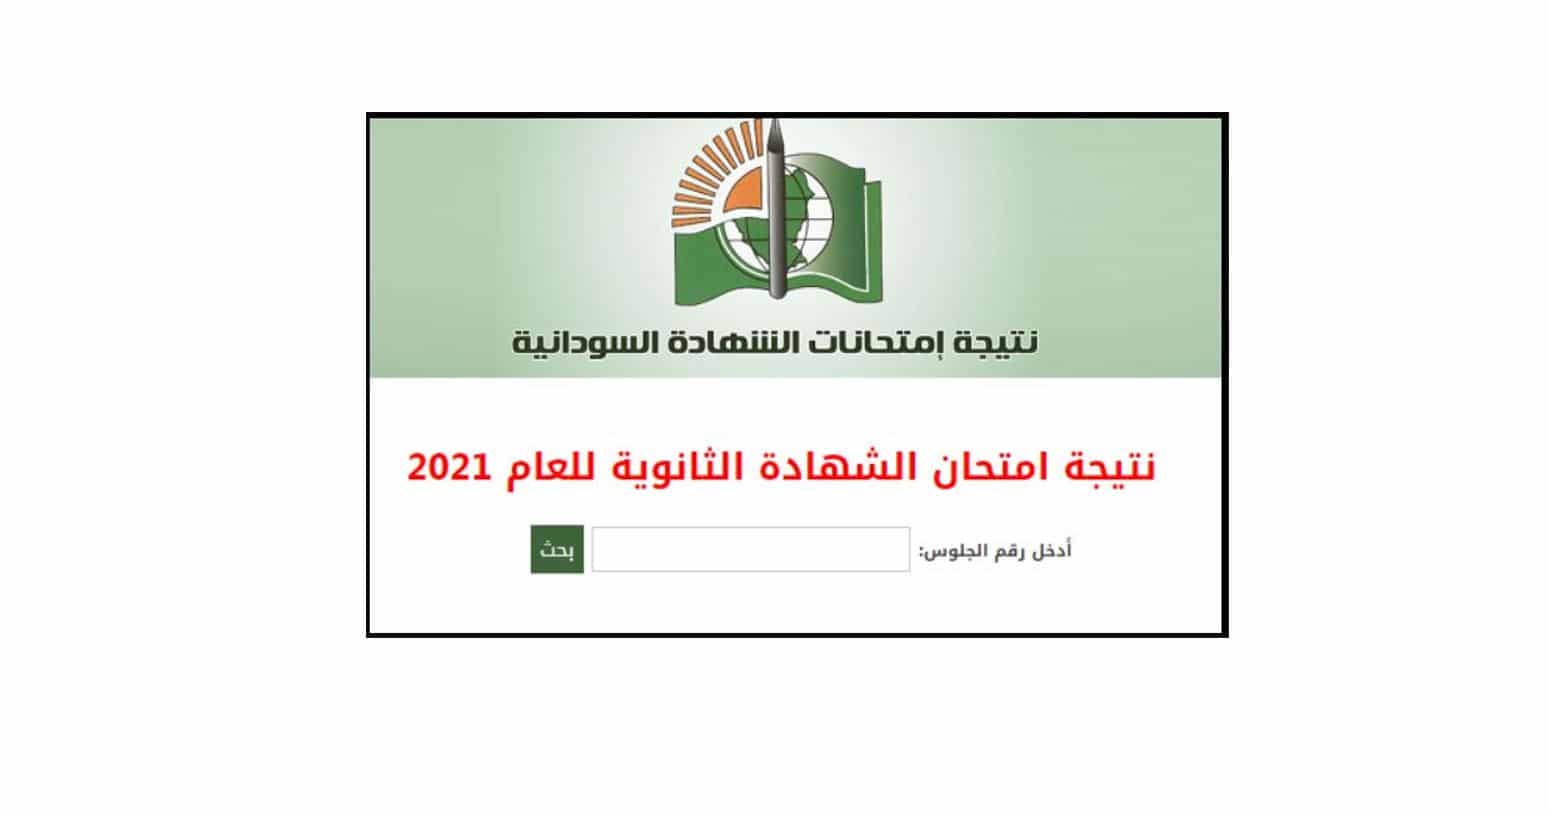 الشهادة السودانية - معرفة نتيجة الشهادة السودانية بإدخال رقم الجلوس 2022 من خلال موقع الوزارة الرسمي